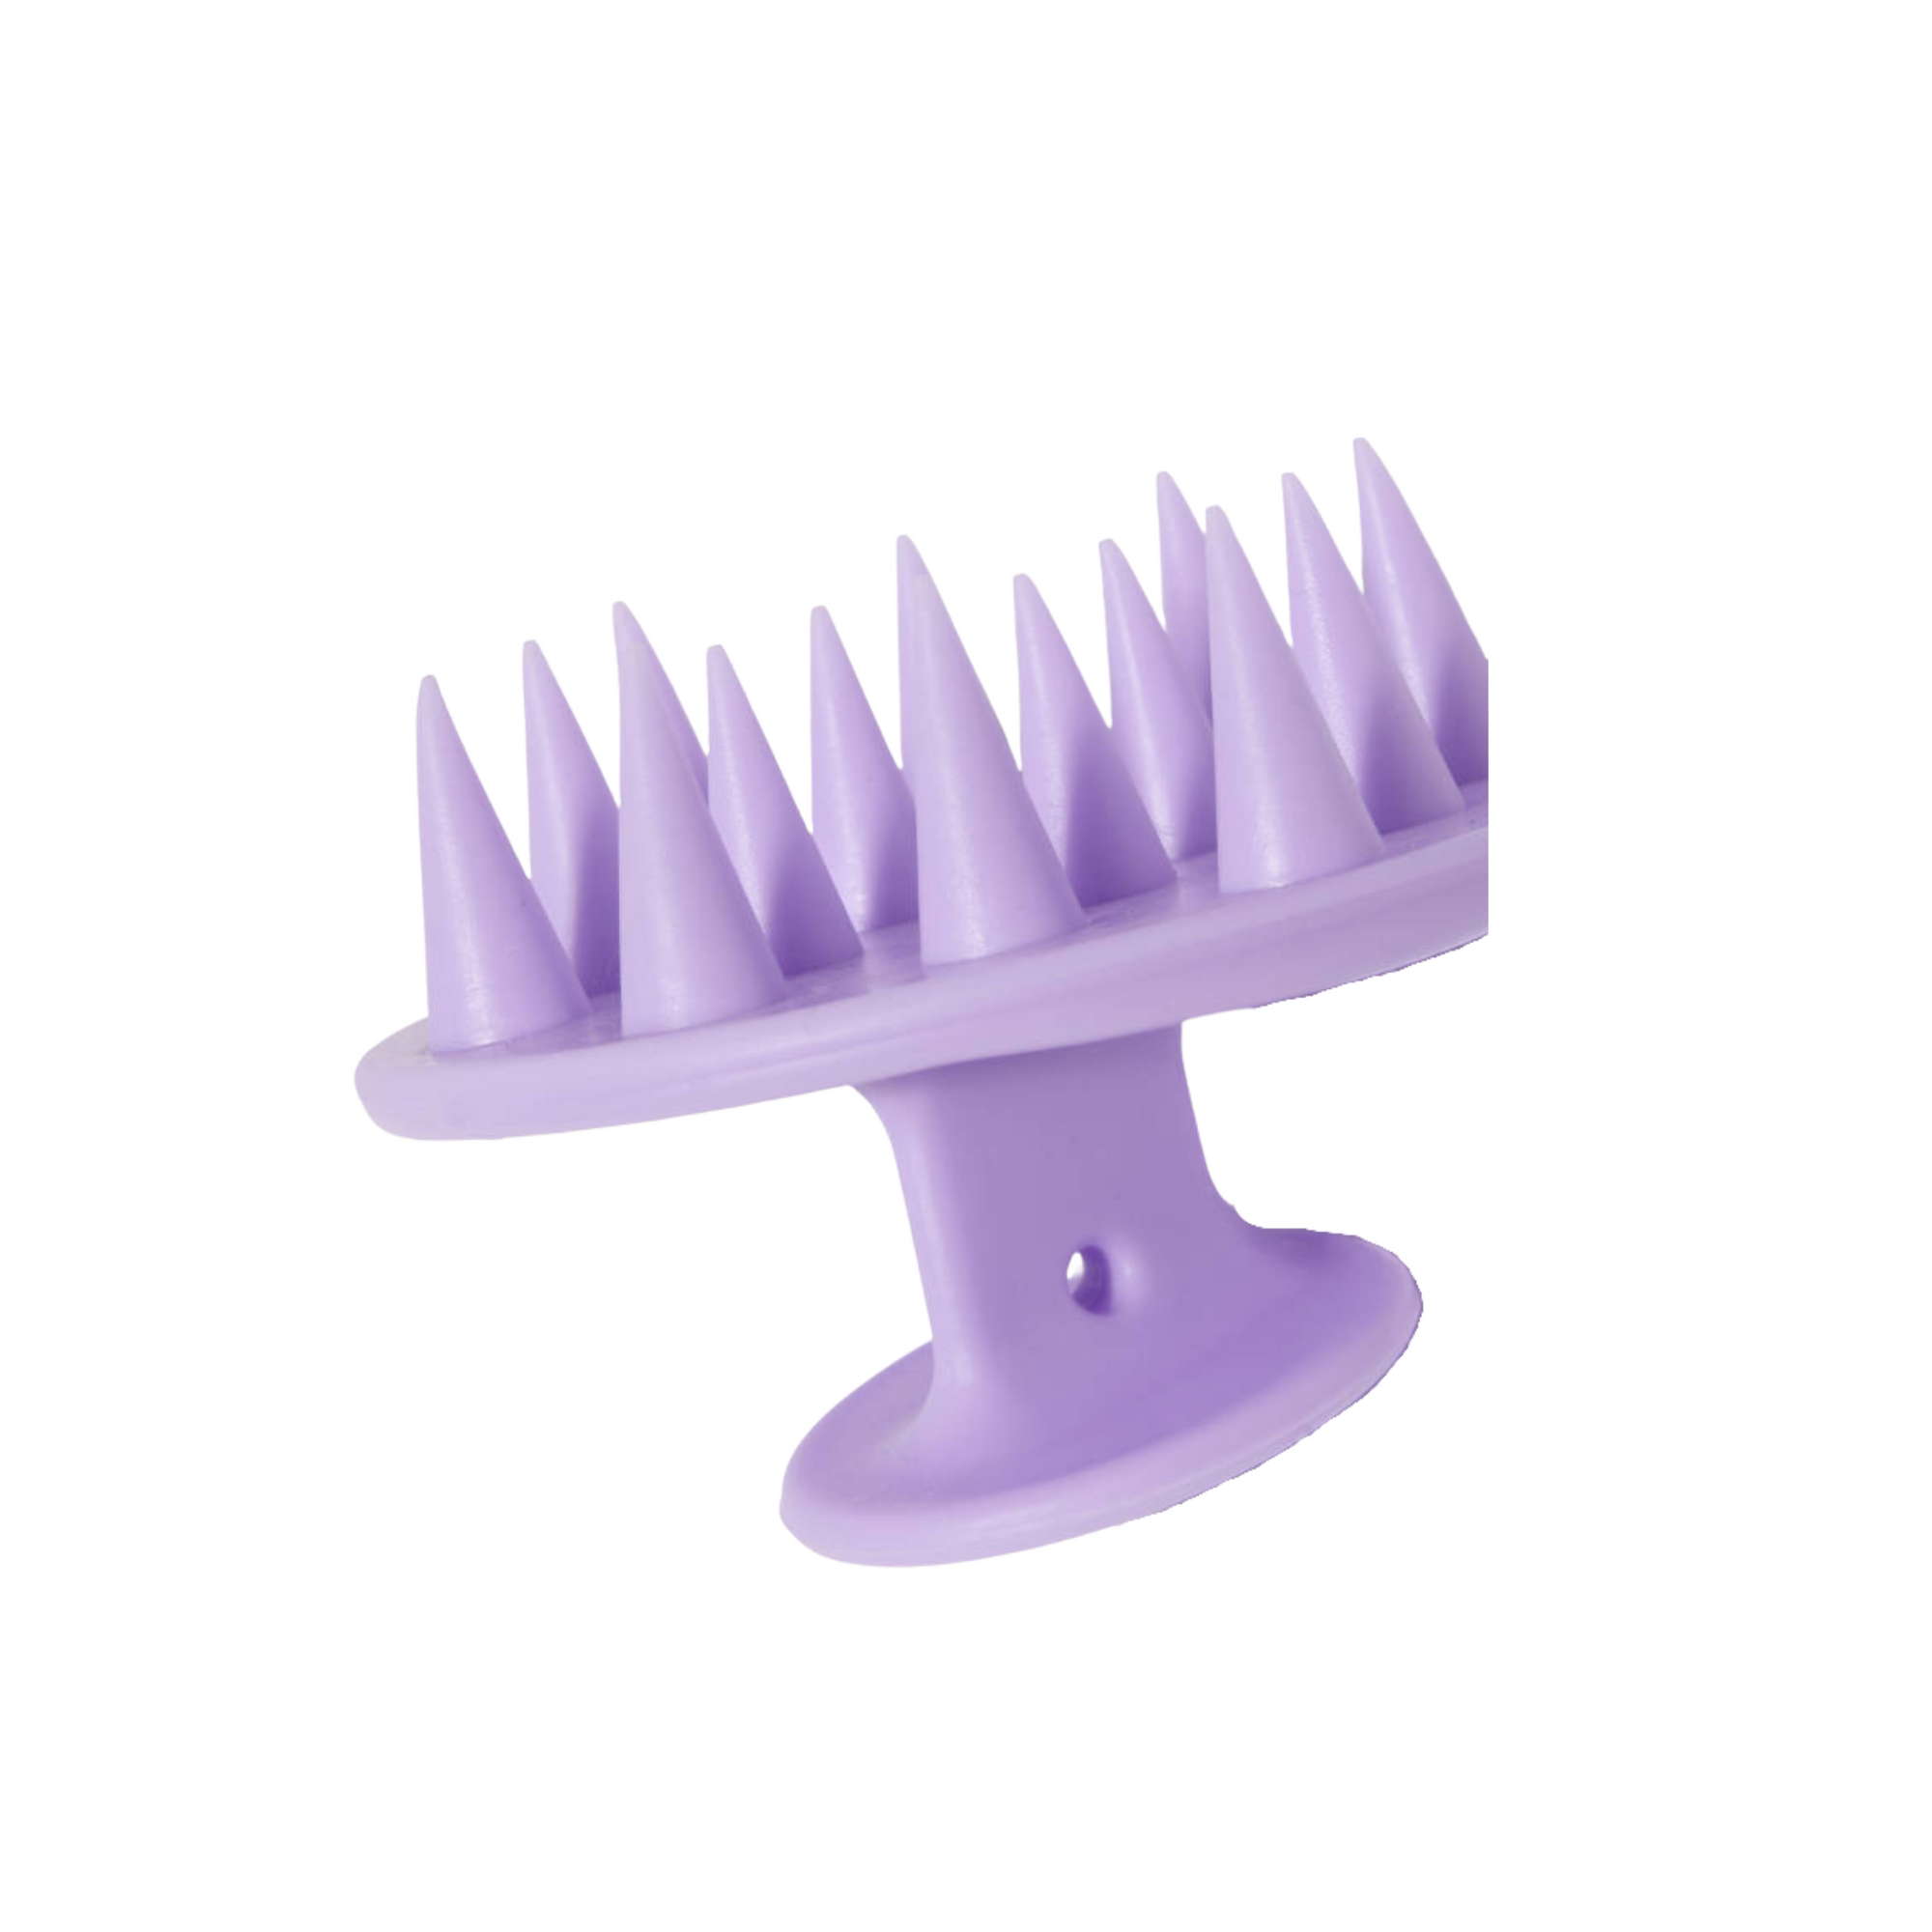 Dame una mano - Cepillo para champú Lilac Dreams